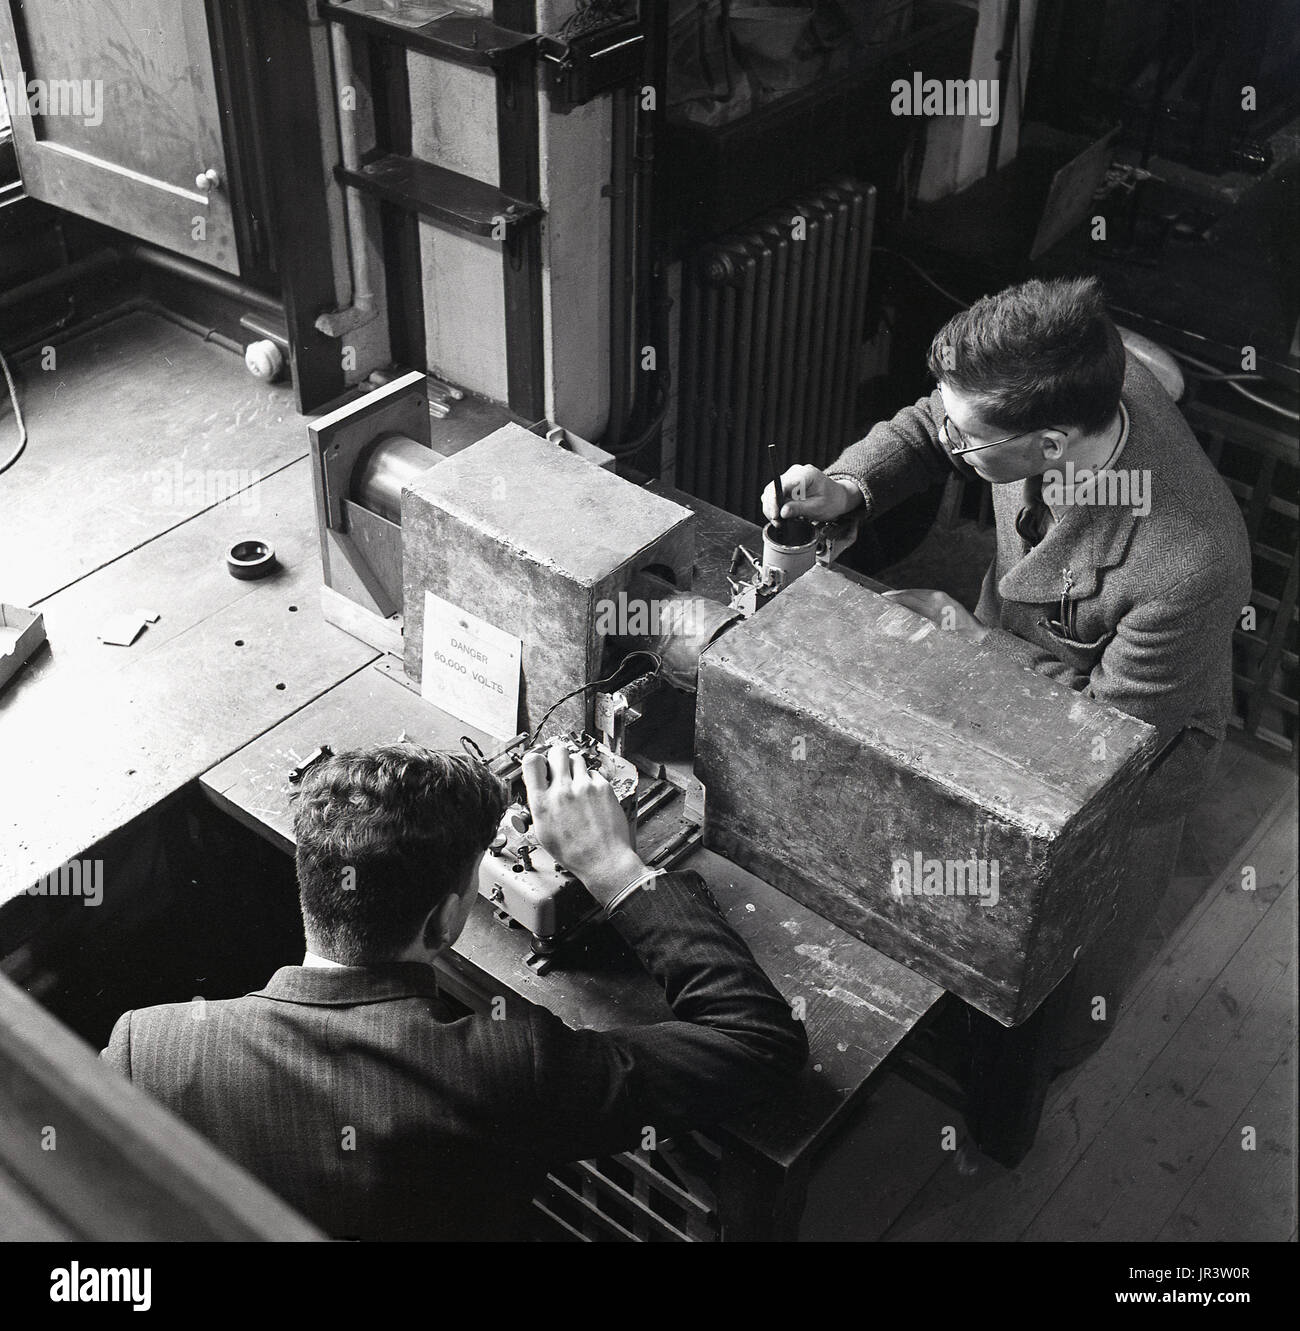 1948, históricos, dos estudiantes de ciencias de la Universidad de Oxford, Oxford, Inglaterra, Reino Unido. haciendo experimentos en el laboratorio de cristalografía, la ciencia que exmaines cristales, el estudio de la estructura atómica y molecular. Foto de stock